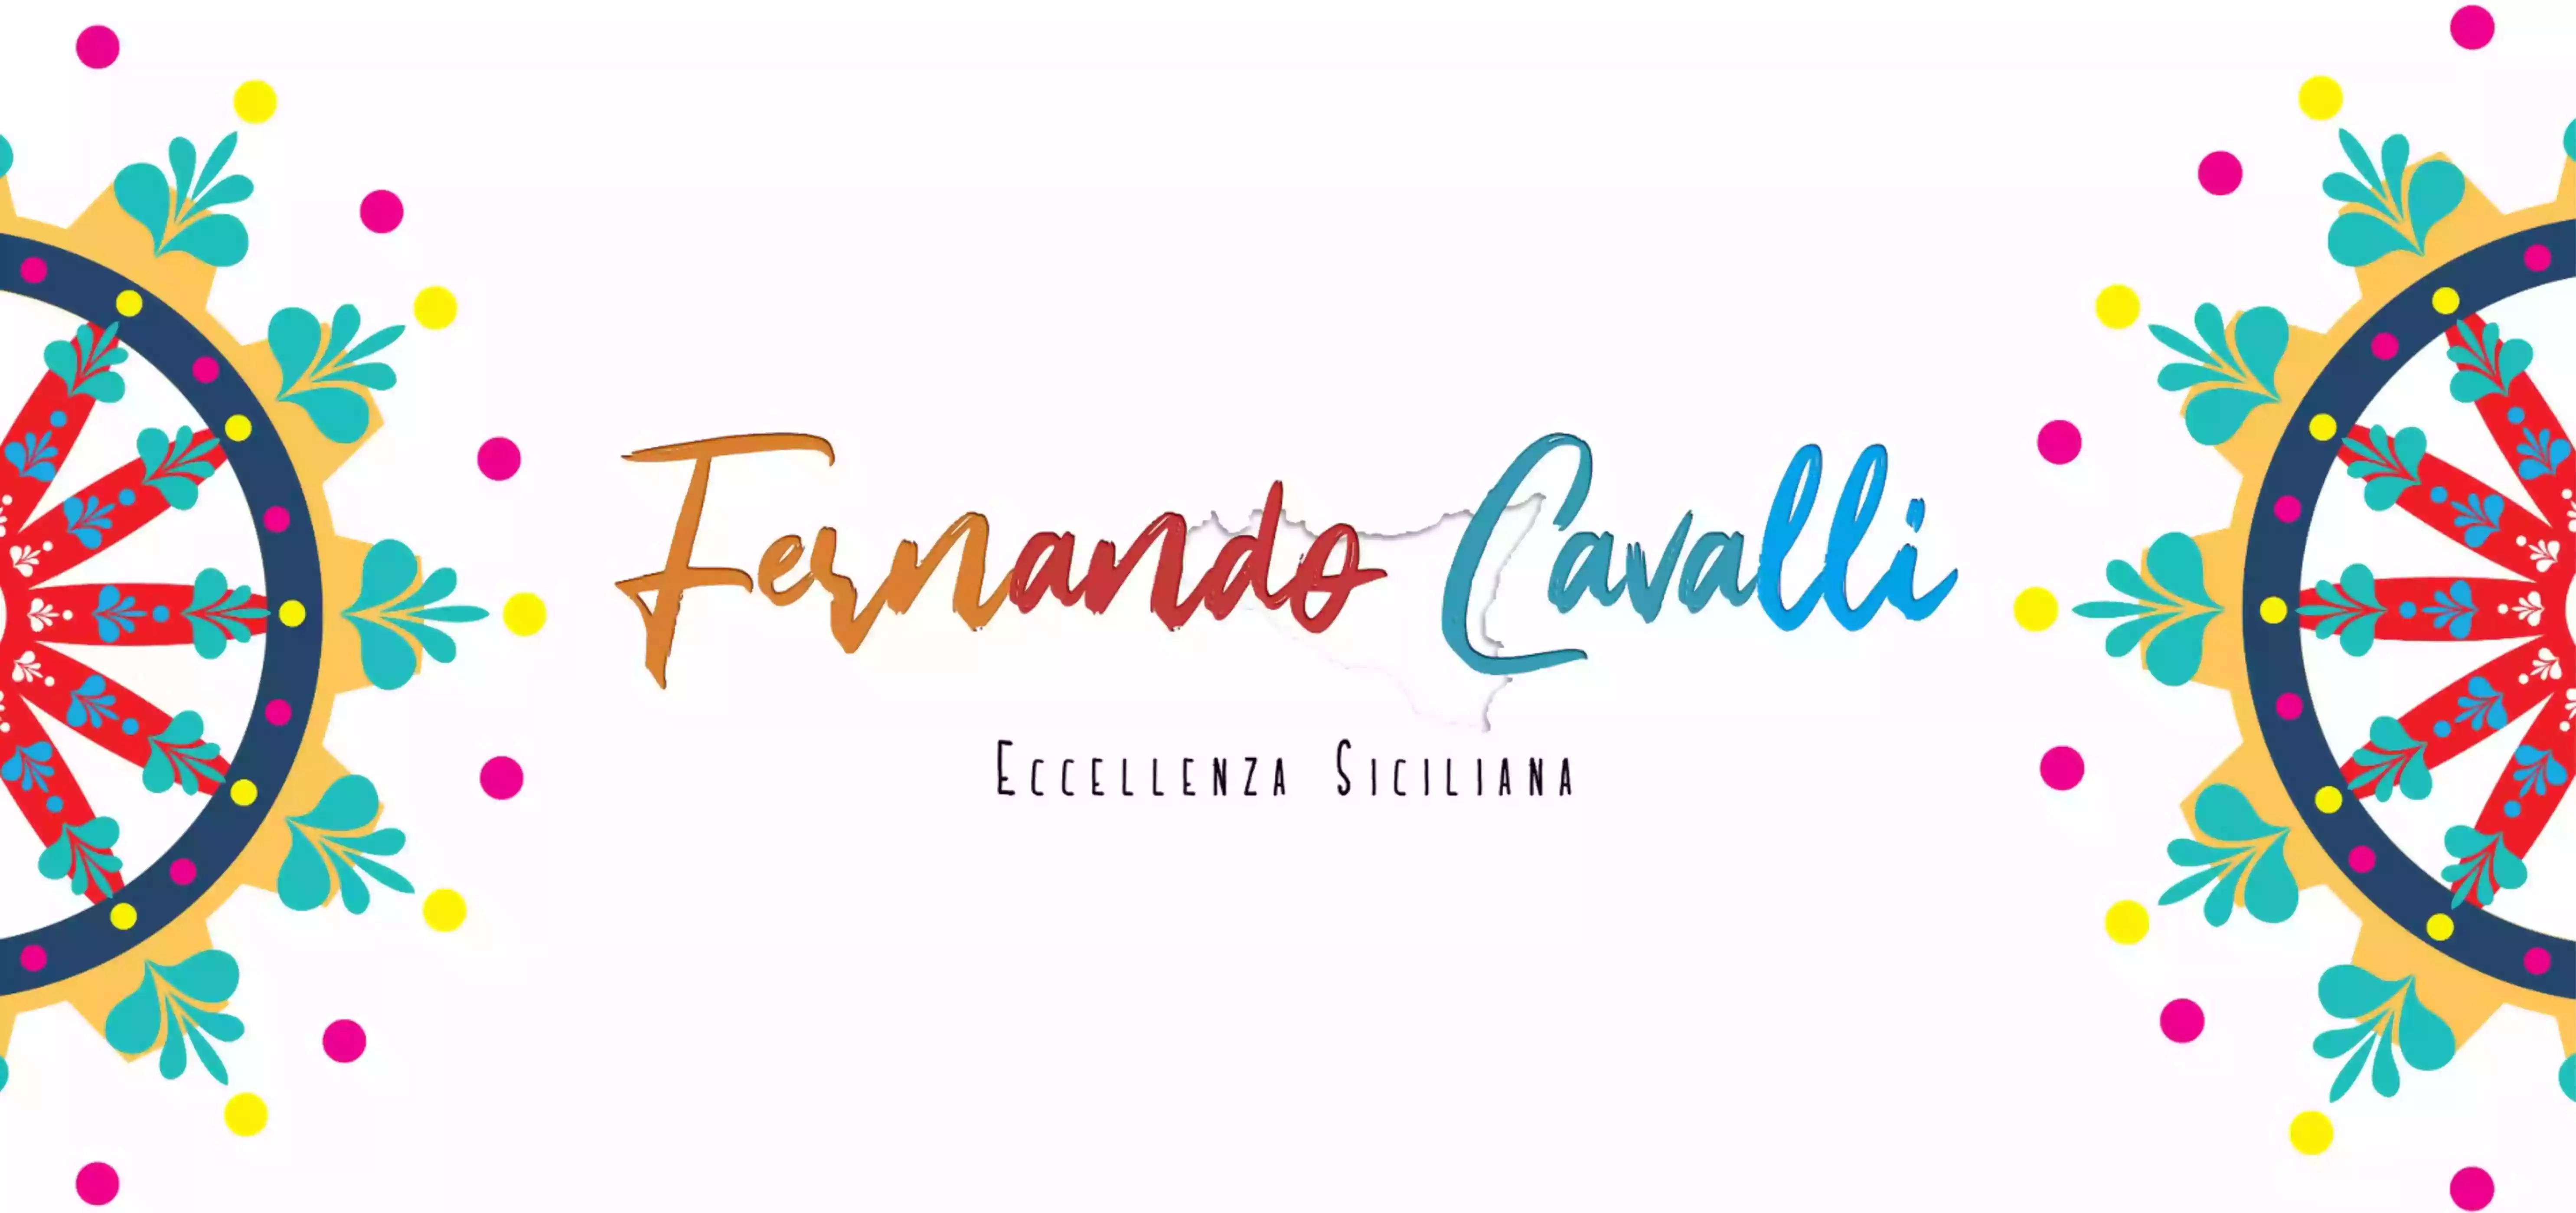 Fernando Cavalli vendita Online di prodotti tipici Siciliani ed Eccellenze Siciliane Sicilia